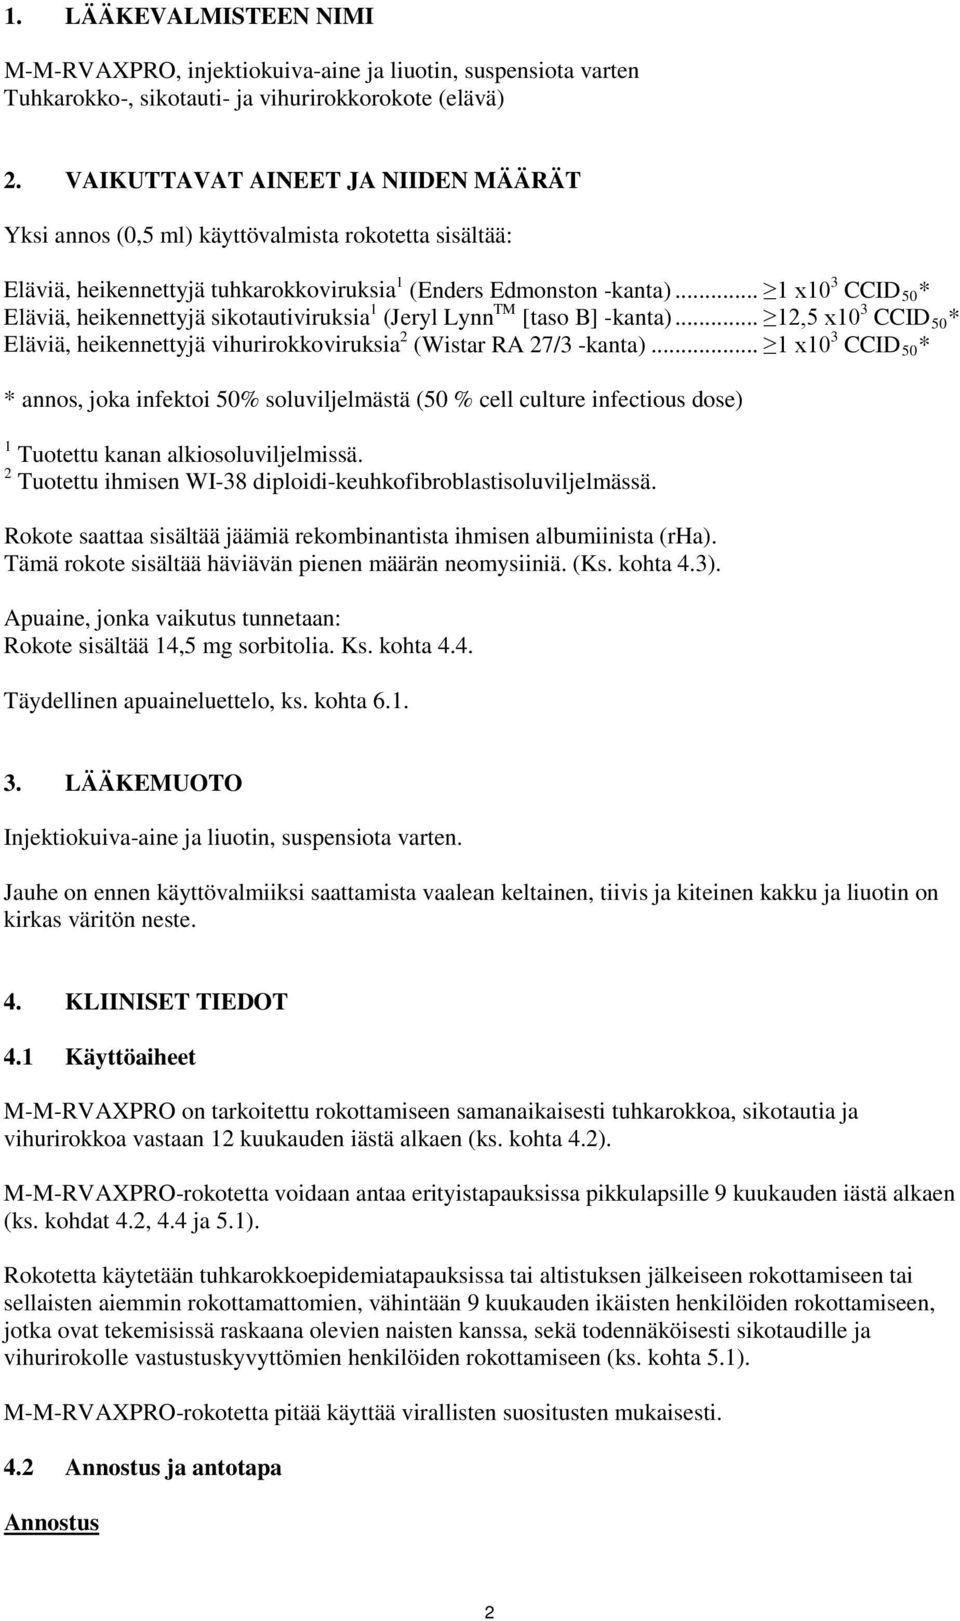 .. 1 x10 3 CCID 50 * Eläviä, heikennettyjä sikotautiviruksia 1 (Jeryl Lynn TM [taso B] -kanta)... 12,5 x10 3 CCID 50 * Eläviä, heikennettyjä vihurirokkoviruksia 2 (Wistar RA 27/3 -kanta).